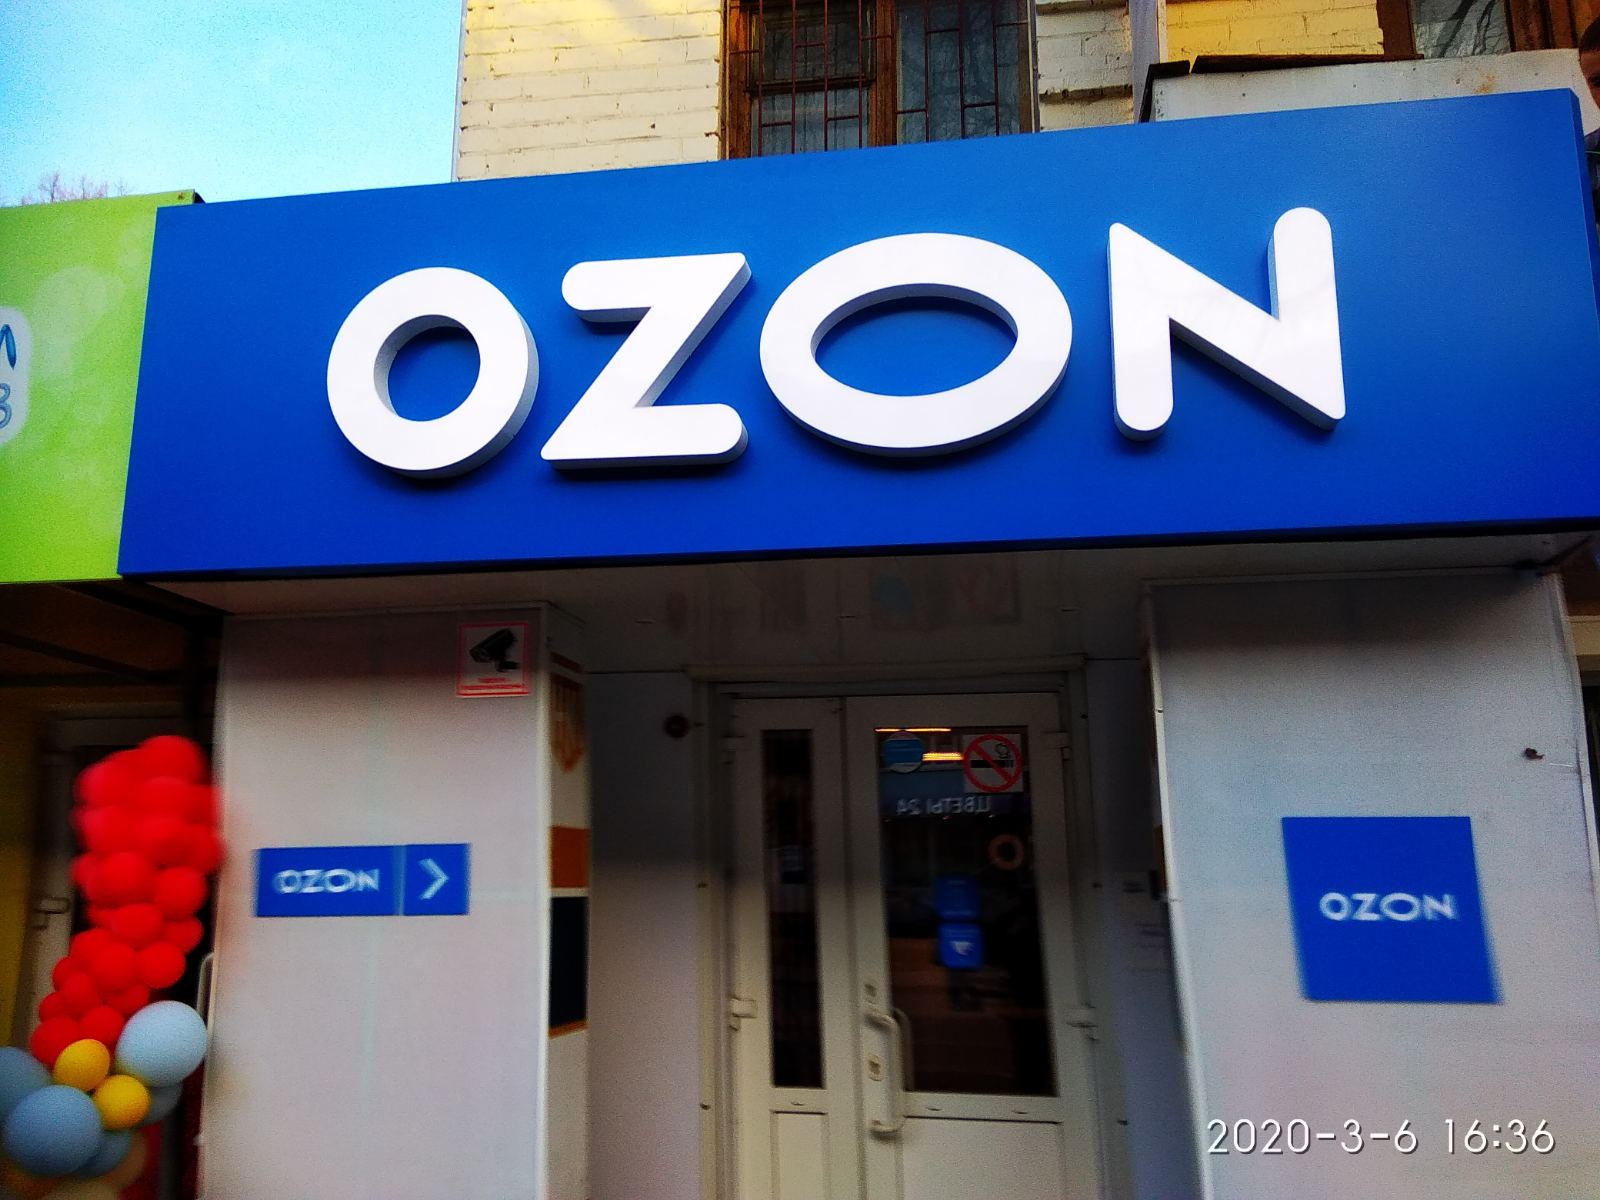 Озон св. Озон магазин. Вывеска Озон. Вывеска Озон на подложке. Фото магазина Озон.